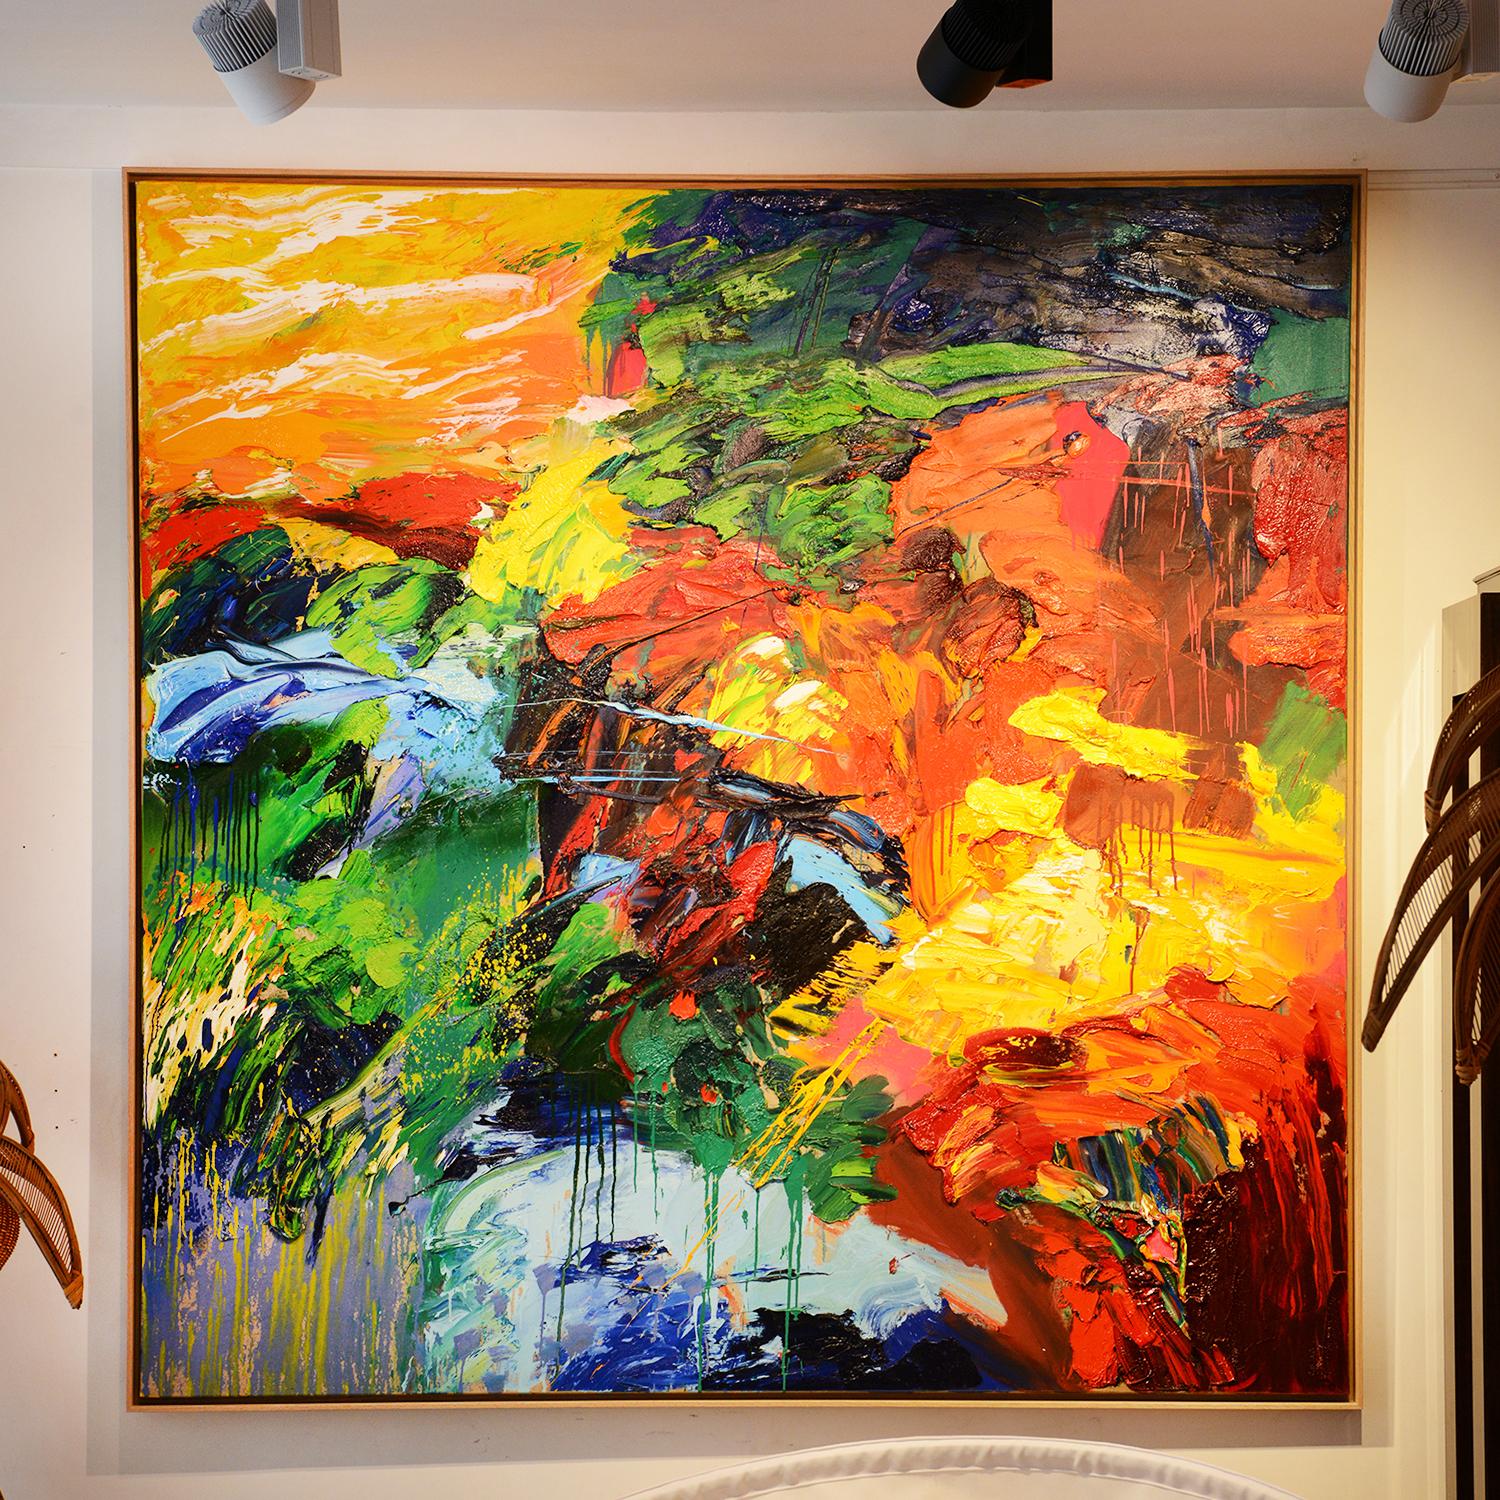 Gemälde auf Leinwand Silence of the Sun, Öl auf Leinwand,
mit massivem Eichenholzrahmen. Außergewöhnlich und einzigartig
Farbe. Abmessungen der Leinwand: L200xH200cm.